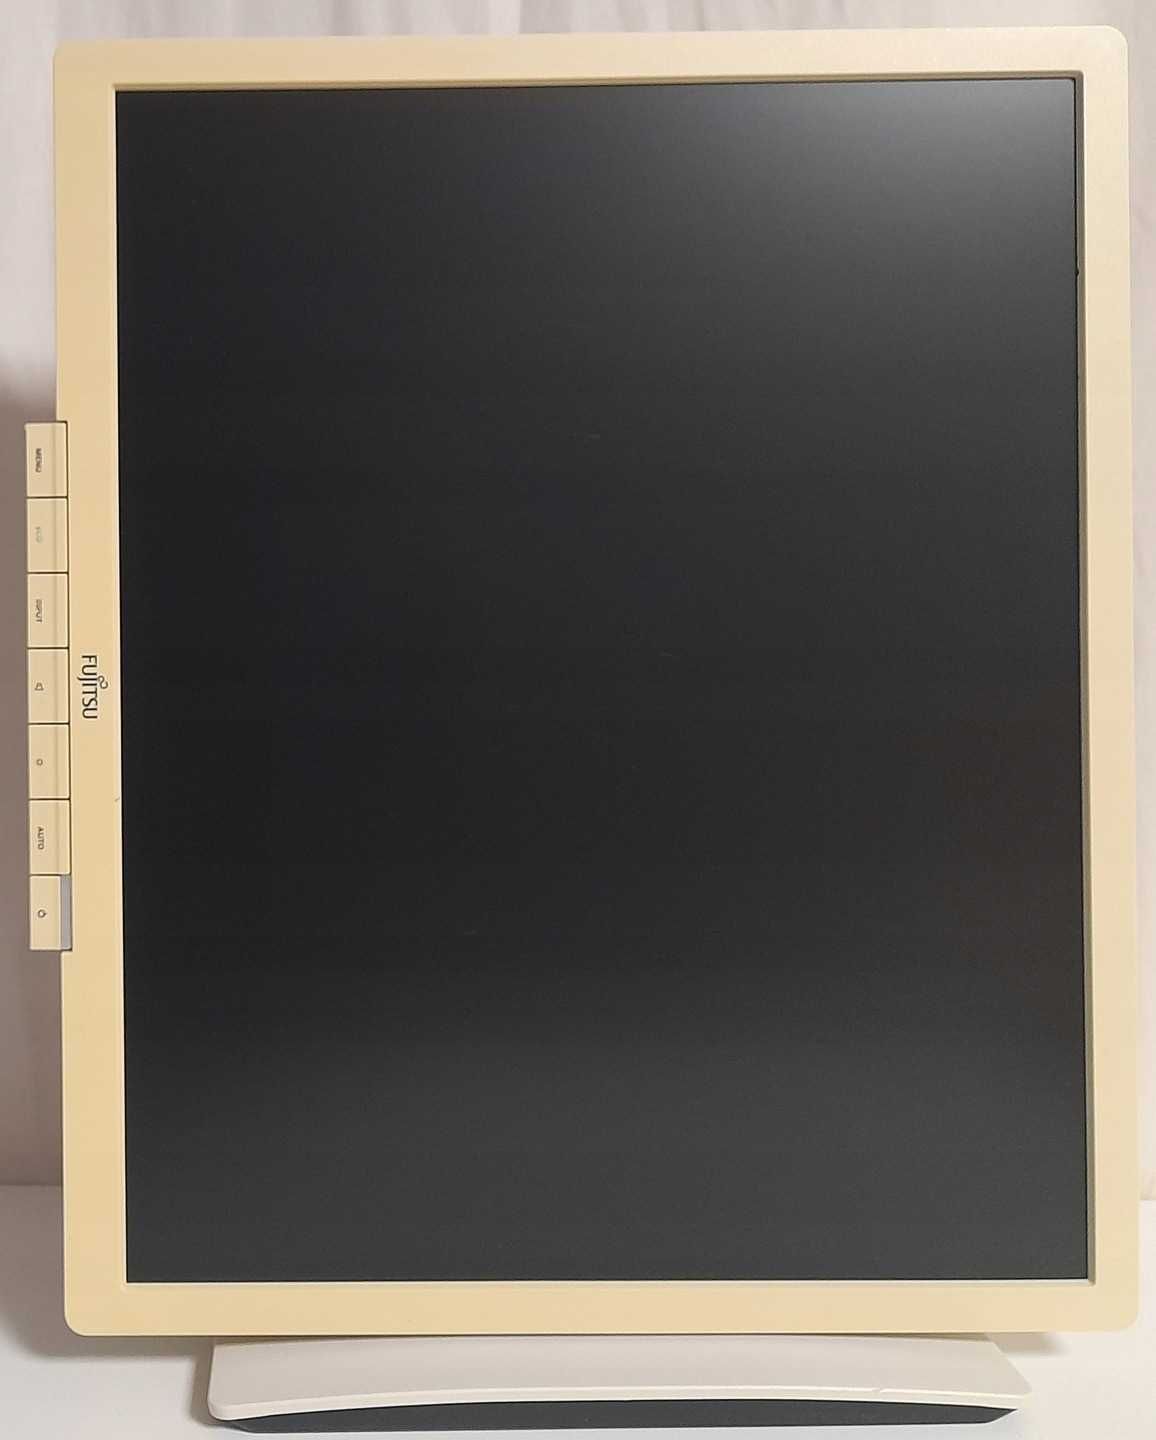 Монитор Fujitsu B19-6 LED, 19", 1280x1024, SXGA 5:4, 250 cd/m2, 1000:1